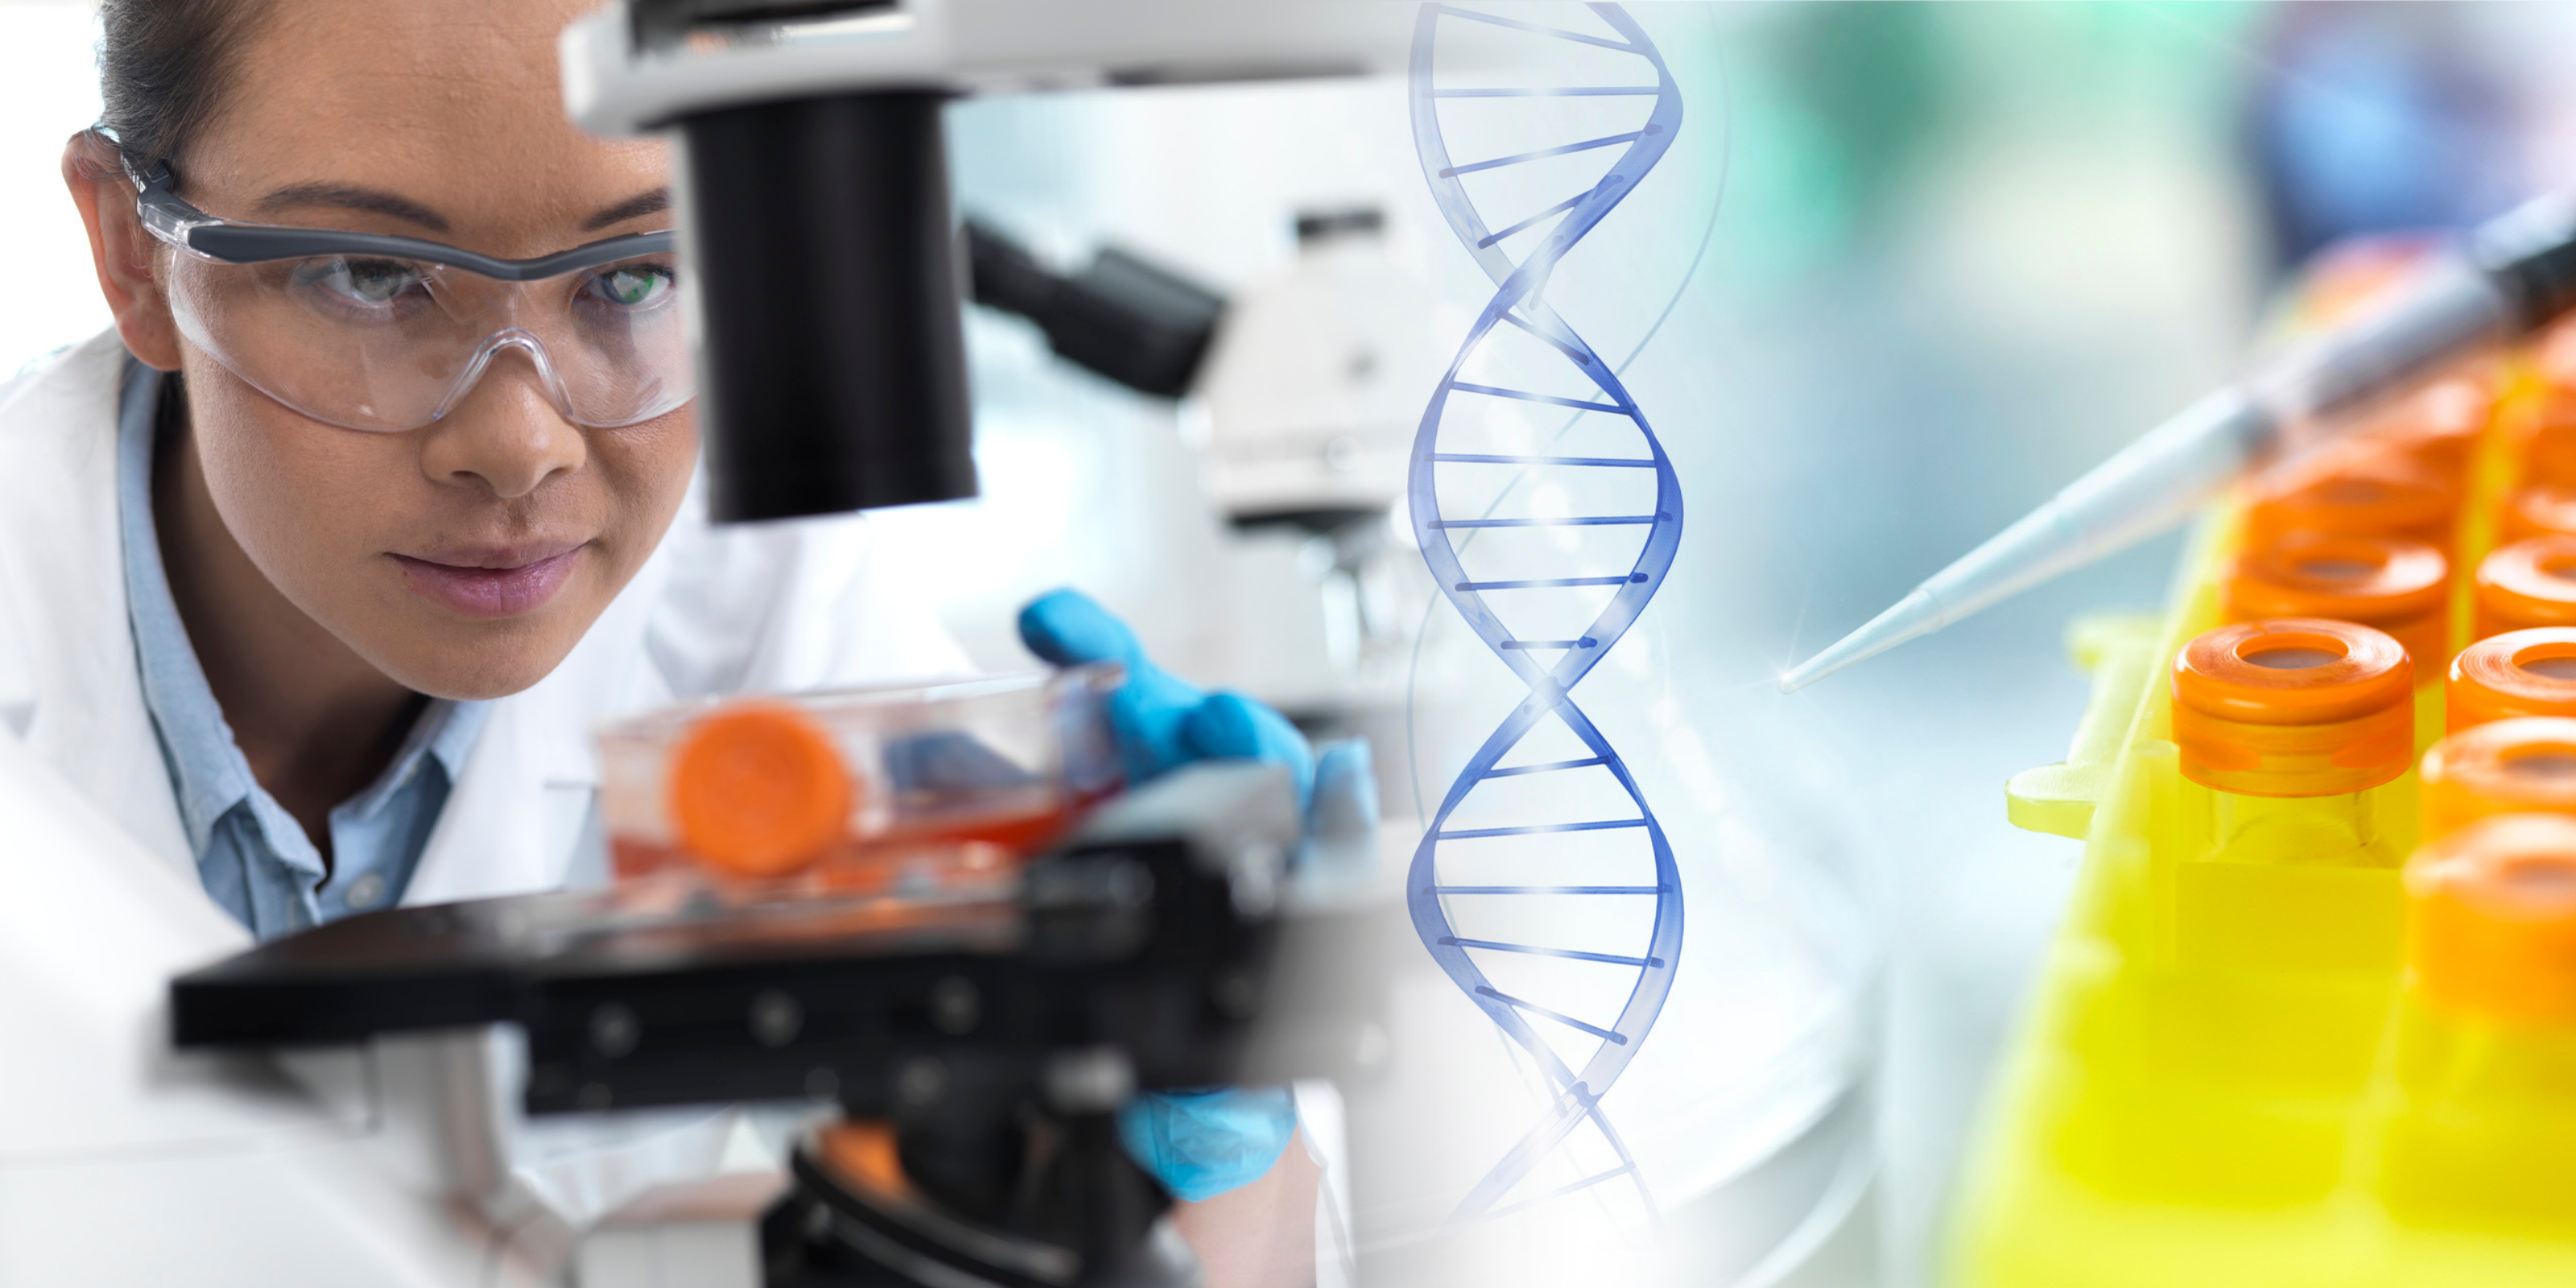 Celebrating National DNA Day Together | The Stem Cellar